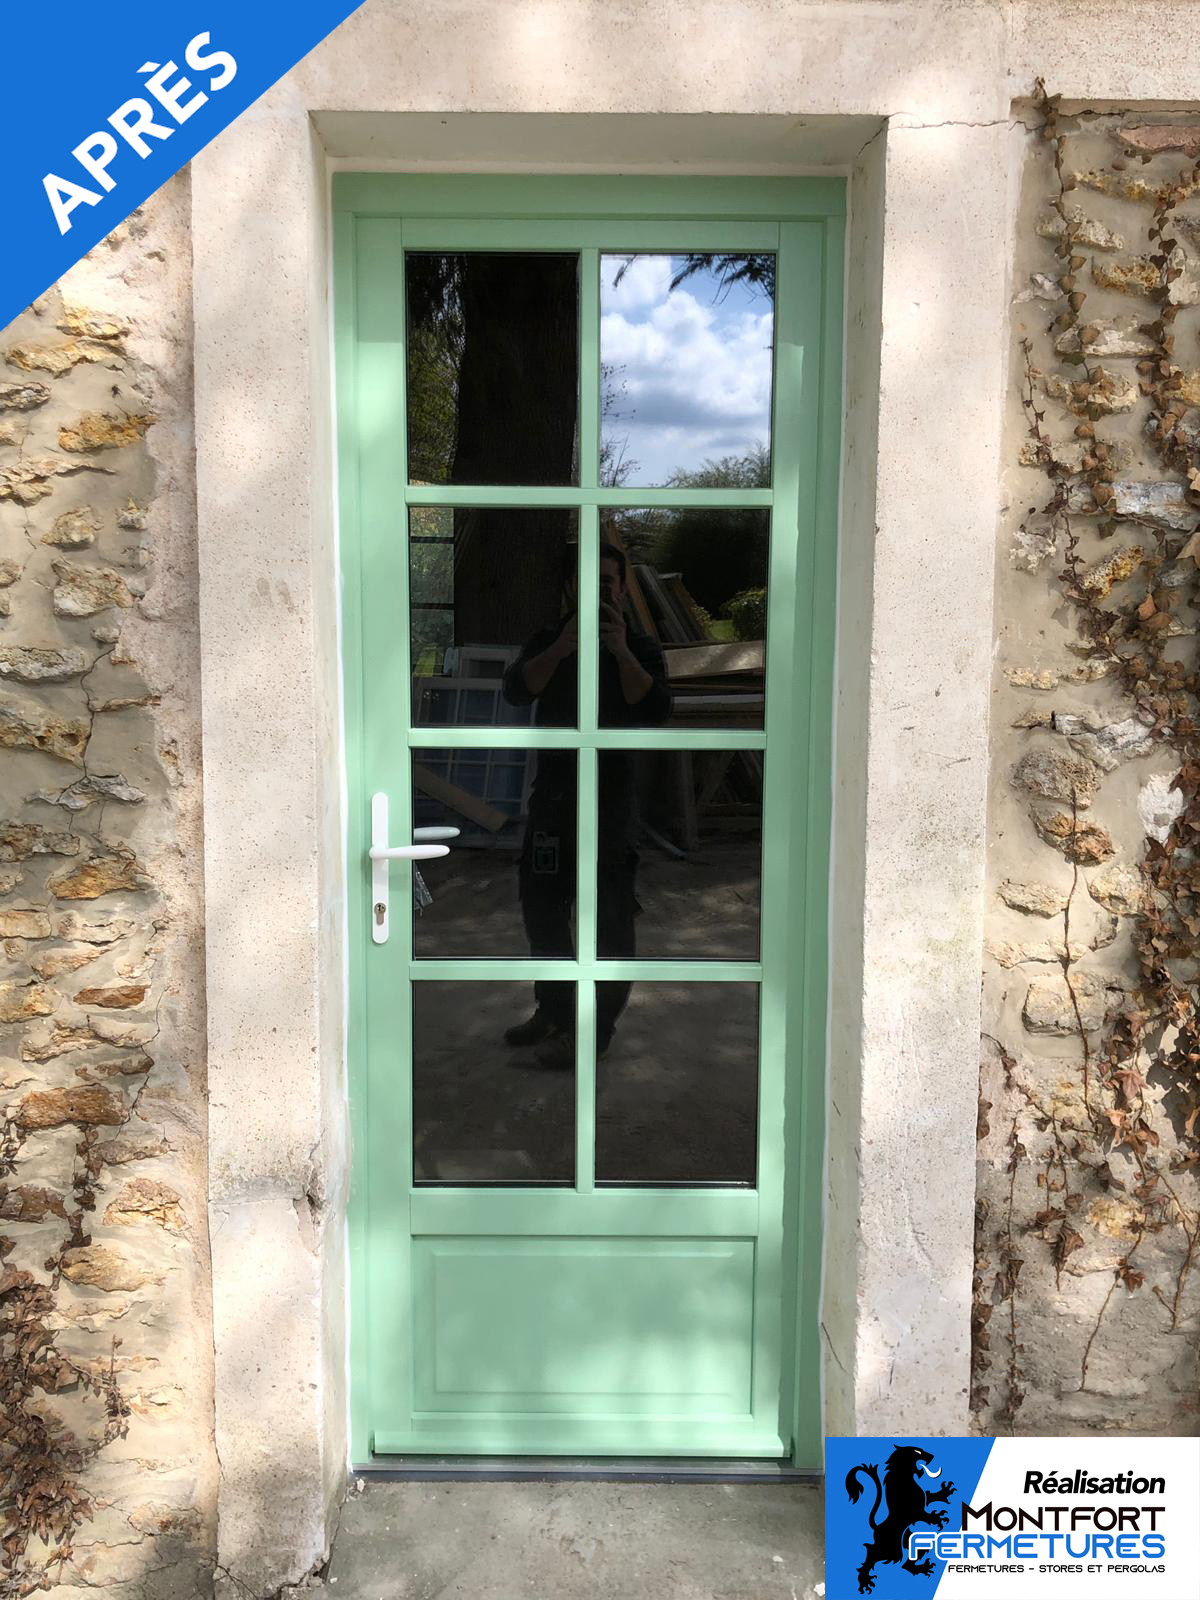 Remplacement de fenêtres à Gambais - Yvelines - Eure et Loir